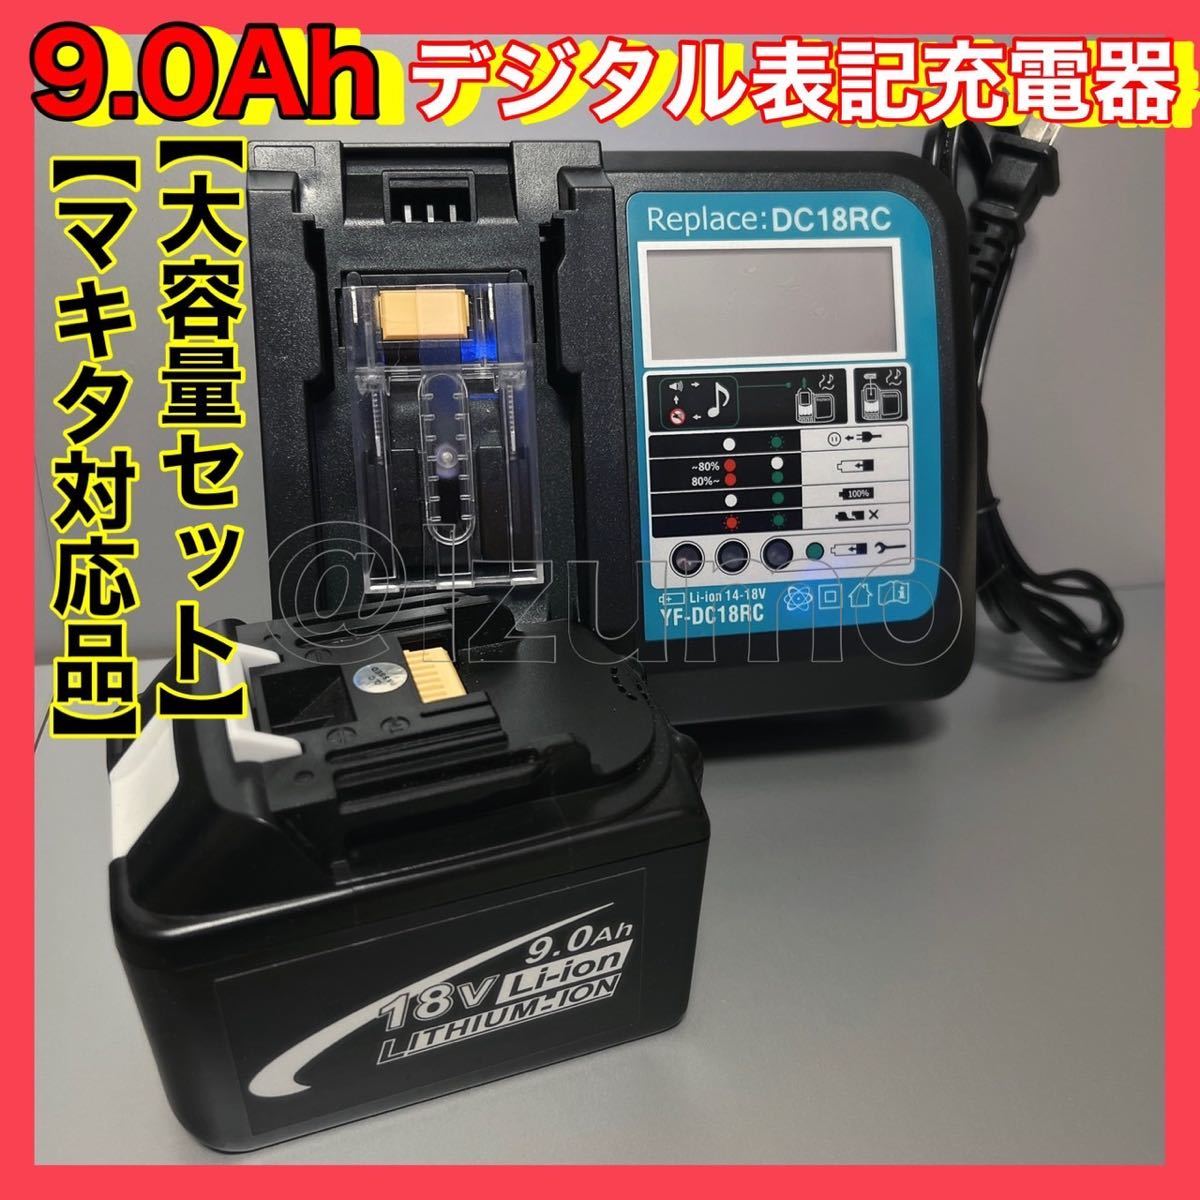 正規品、日本製 ★HiKOKI (ハイコーキ) ★36V電池 ●BSL36B18 ■大容量 工具/メンテナンス